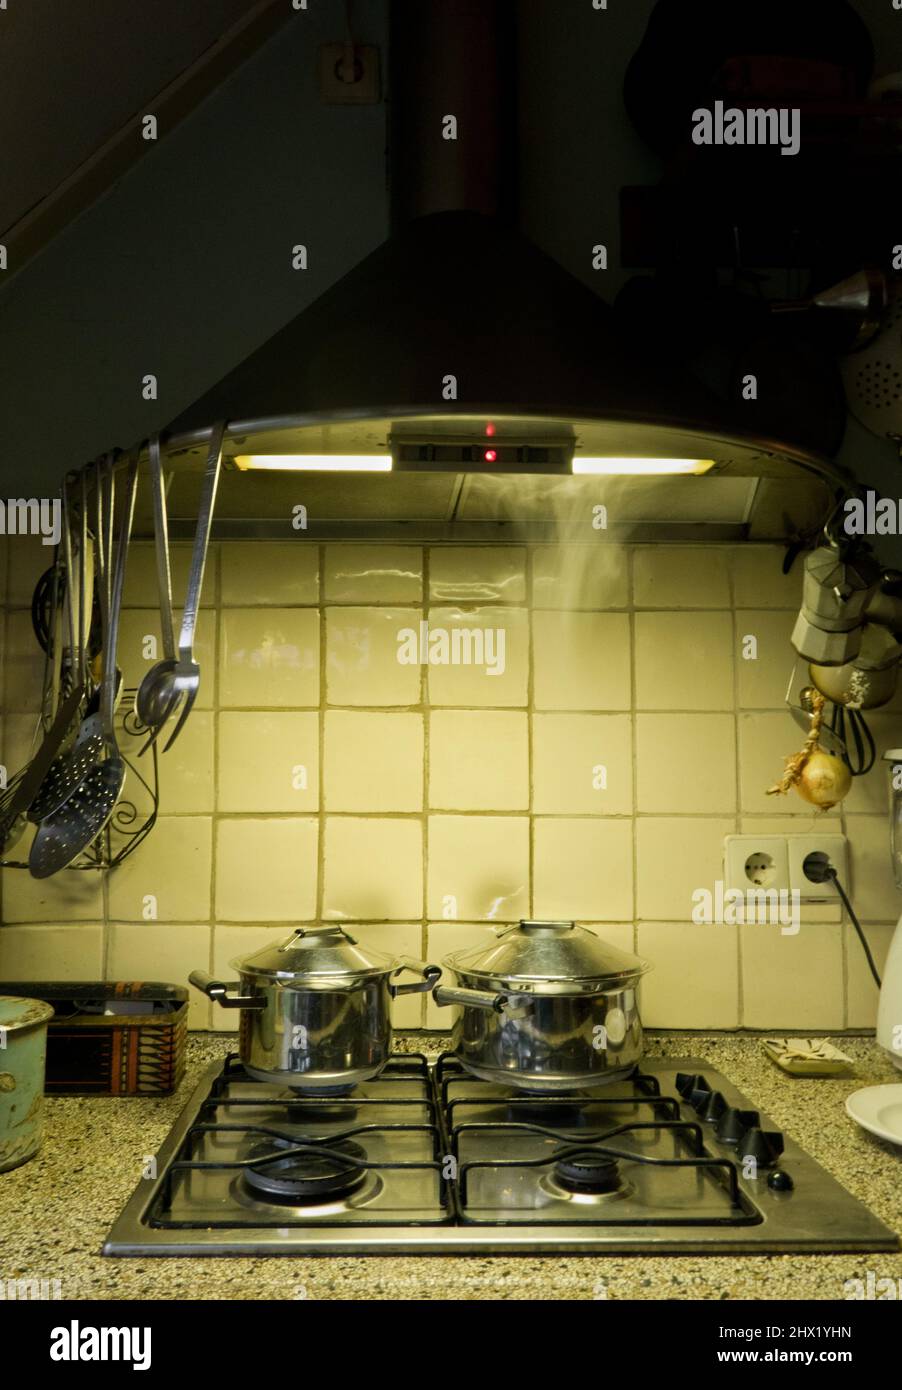 Preparación de la comida por la noche: Sartenes en cocina de gas en la cocina por lamfortune Foto de stock